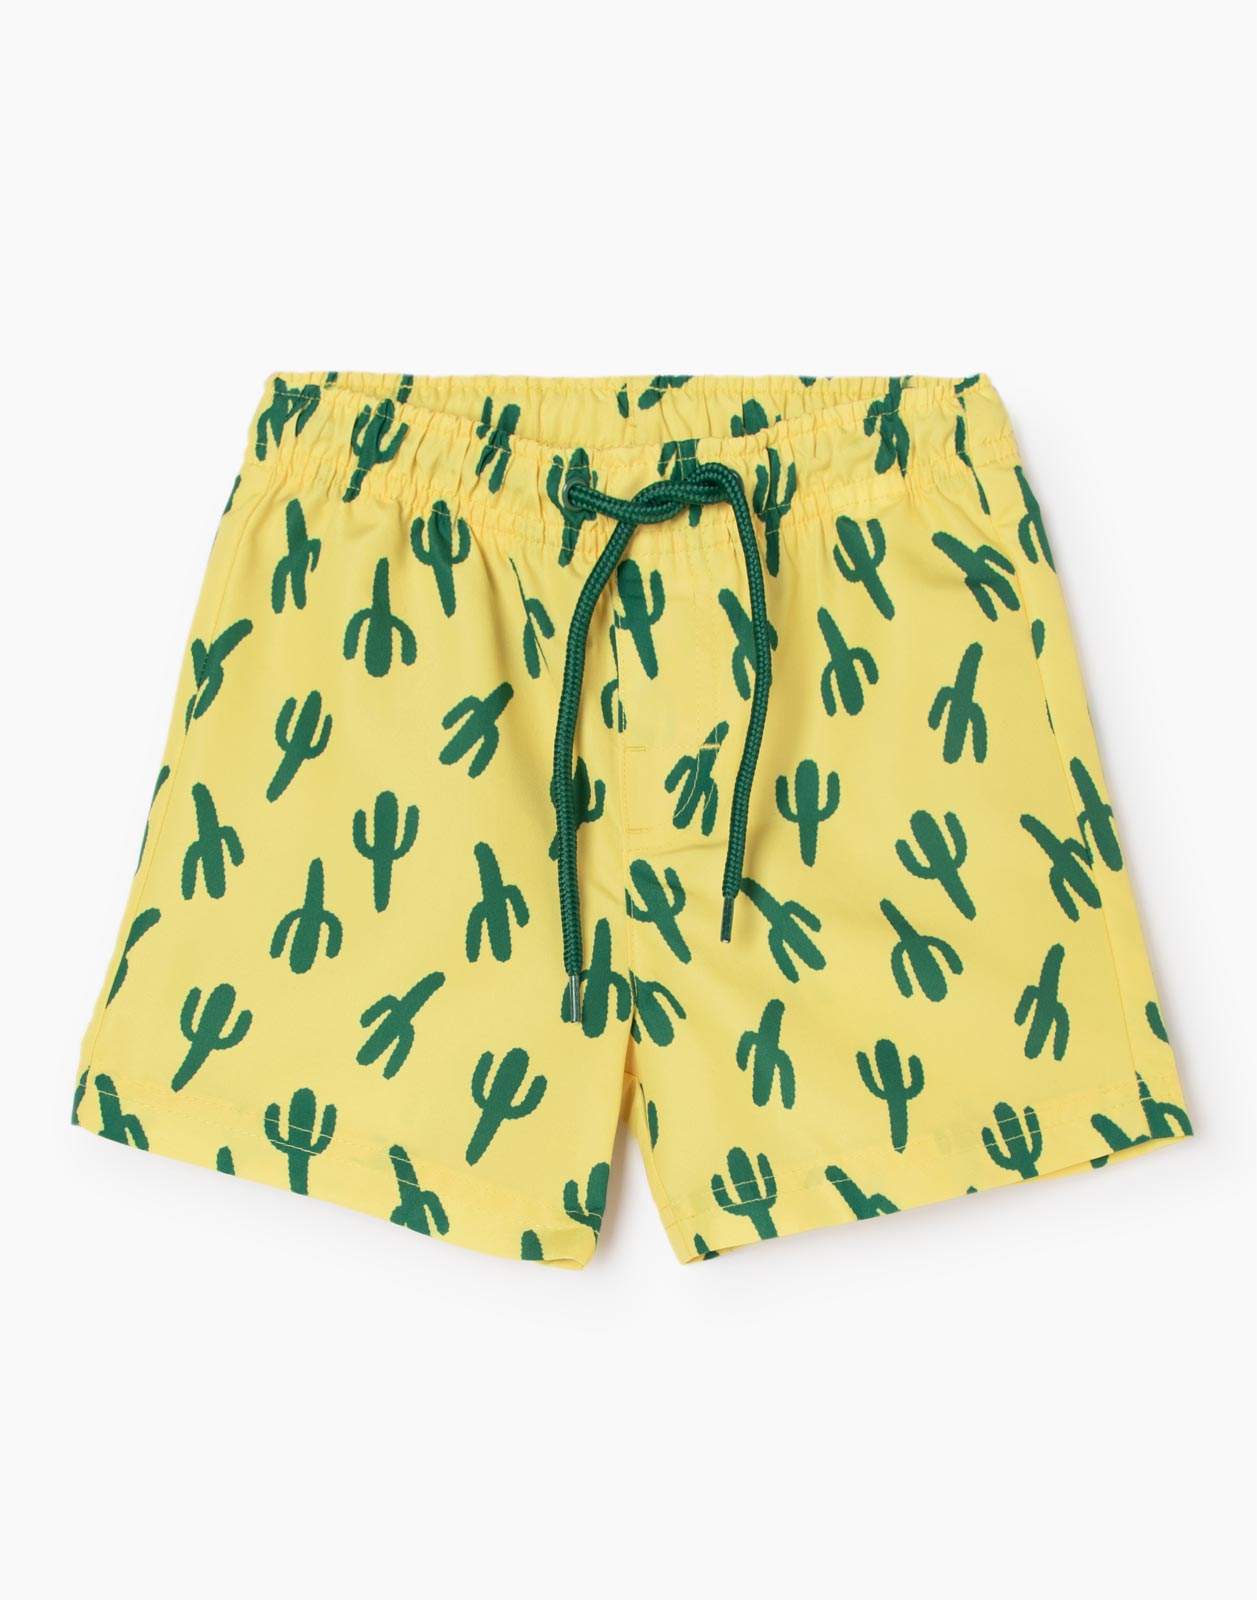 Жёлтые пляжные шорты с кактусами для мальчика р.92